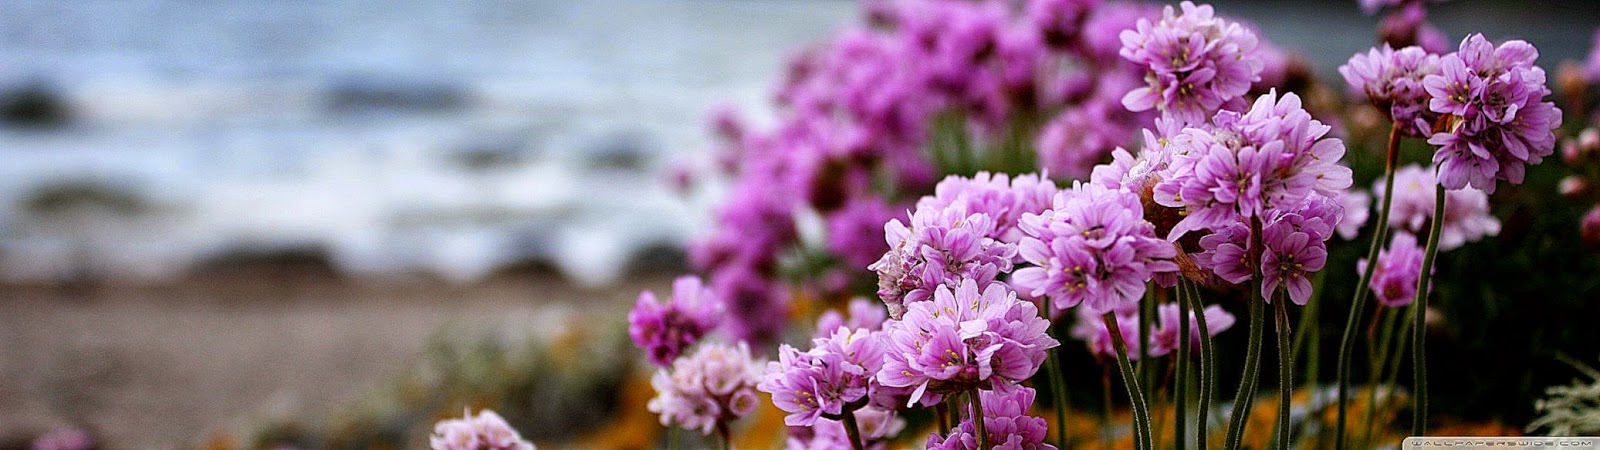 Pink Small Flowers On The Beach Hd Desktop Wallpaper - همه گویند به امید ظهورش صلوات - HD Wallpaper 